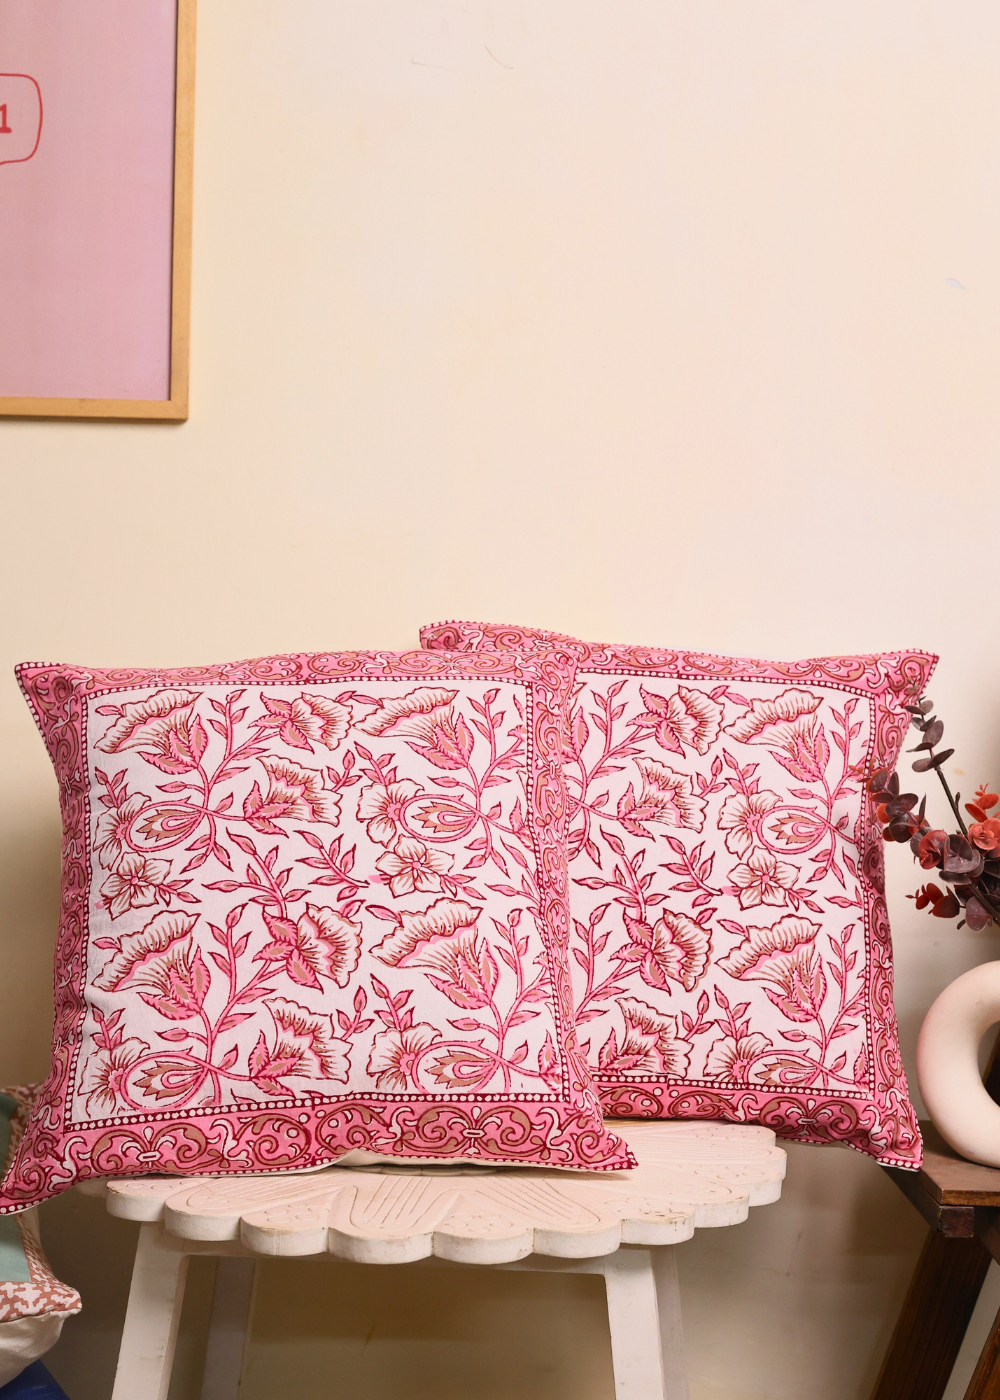 Pink Amaryllis Block Printed Cushion Cover - set of 2